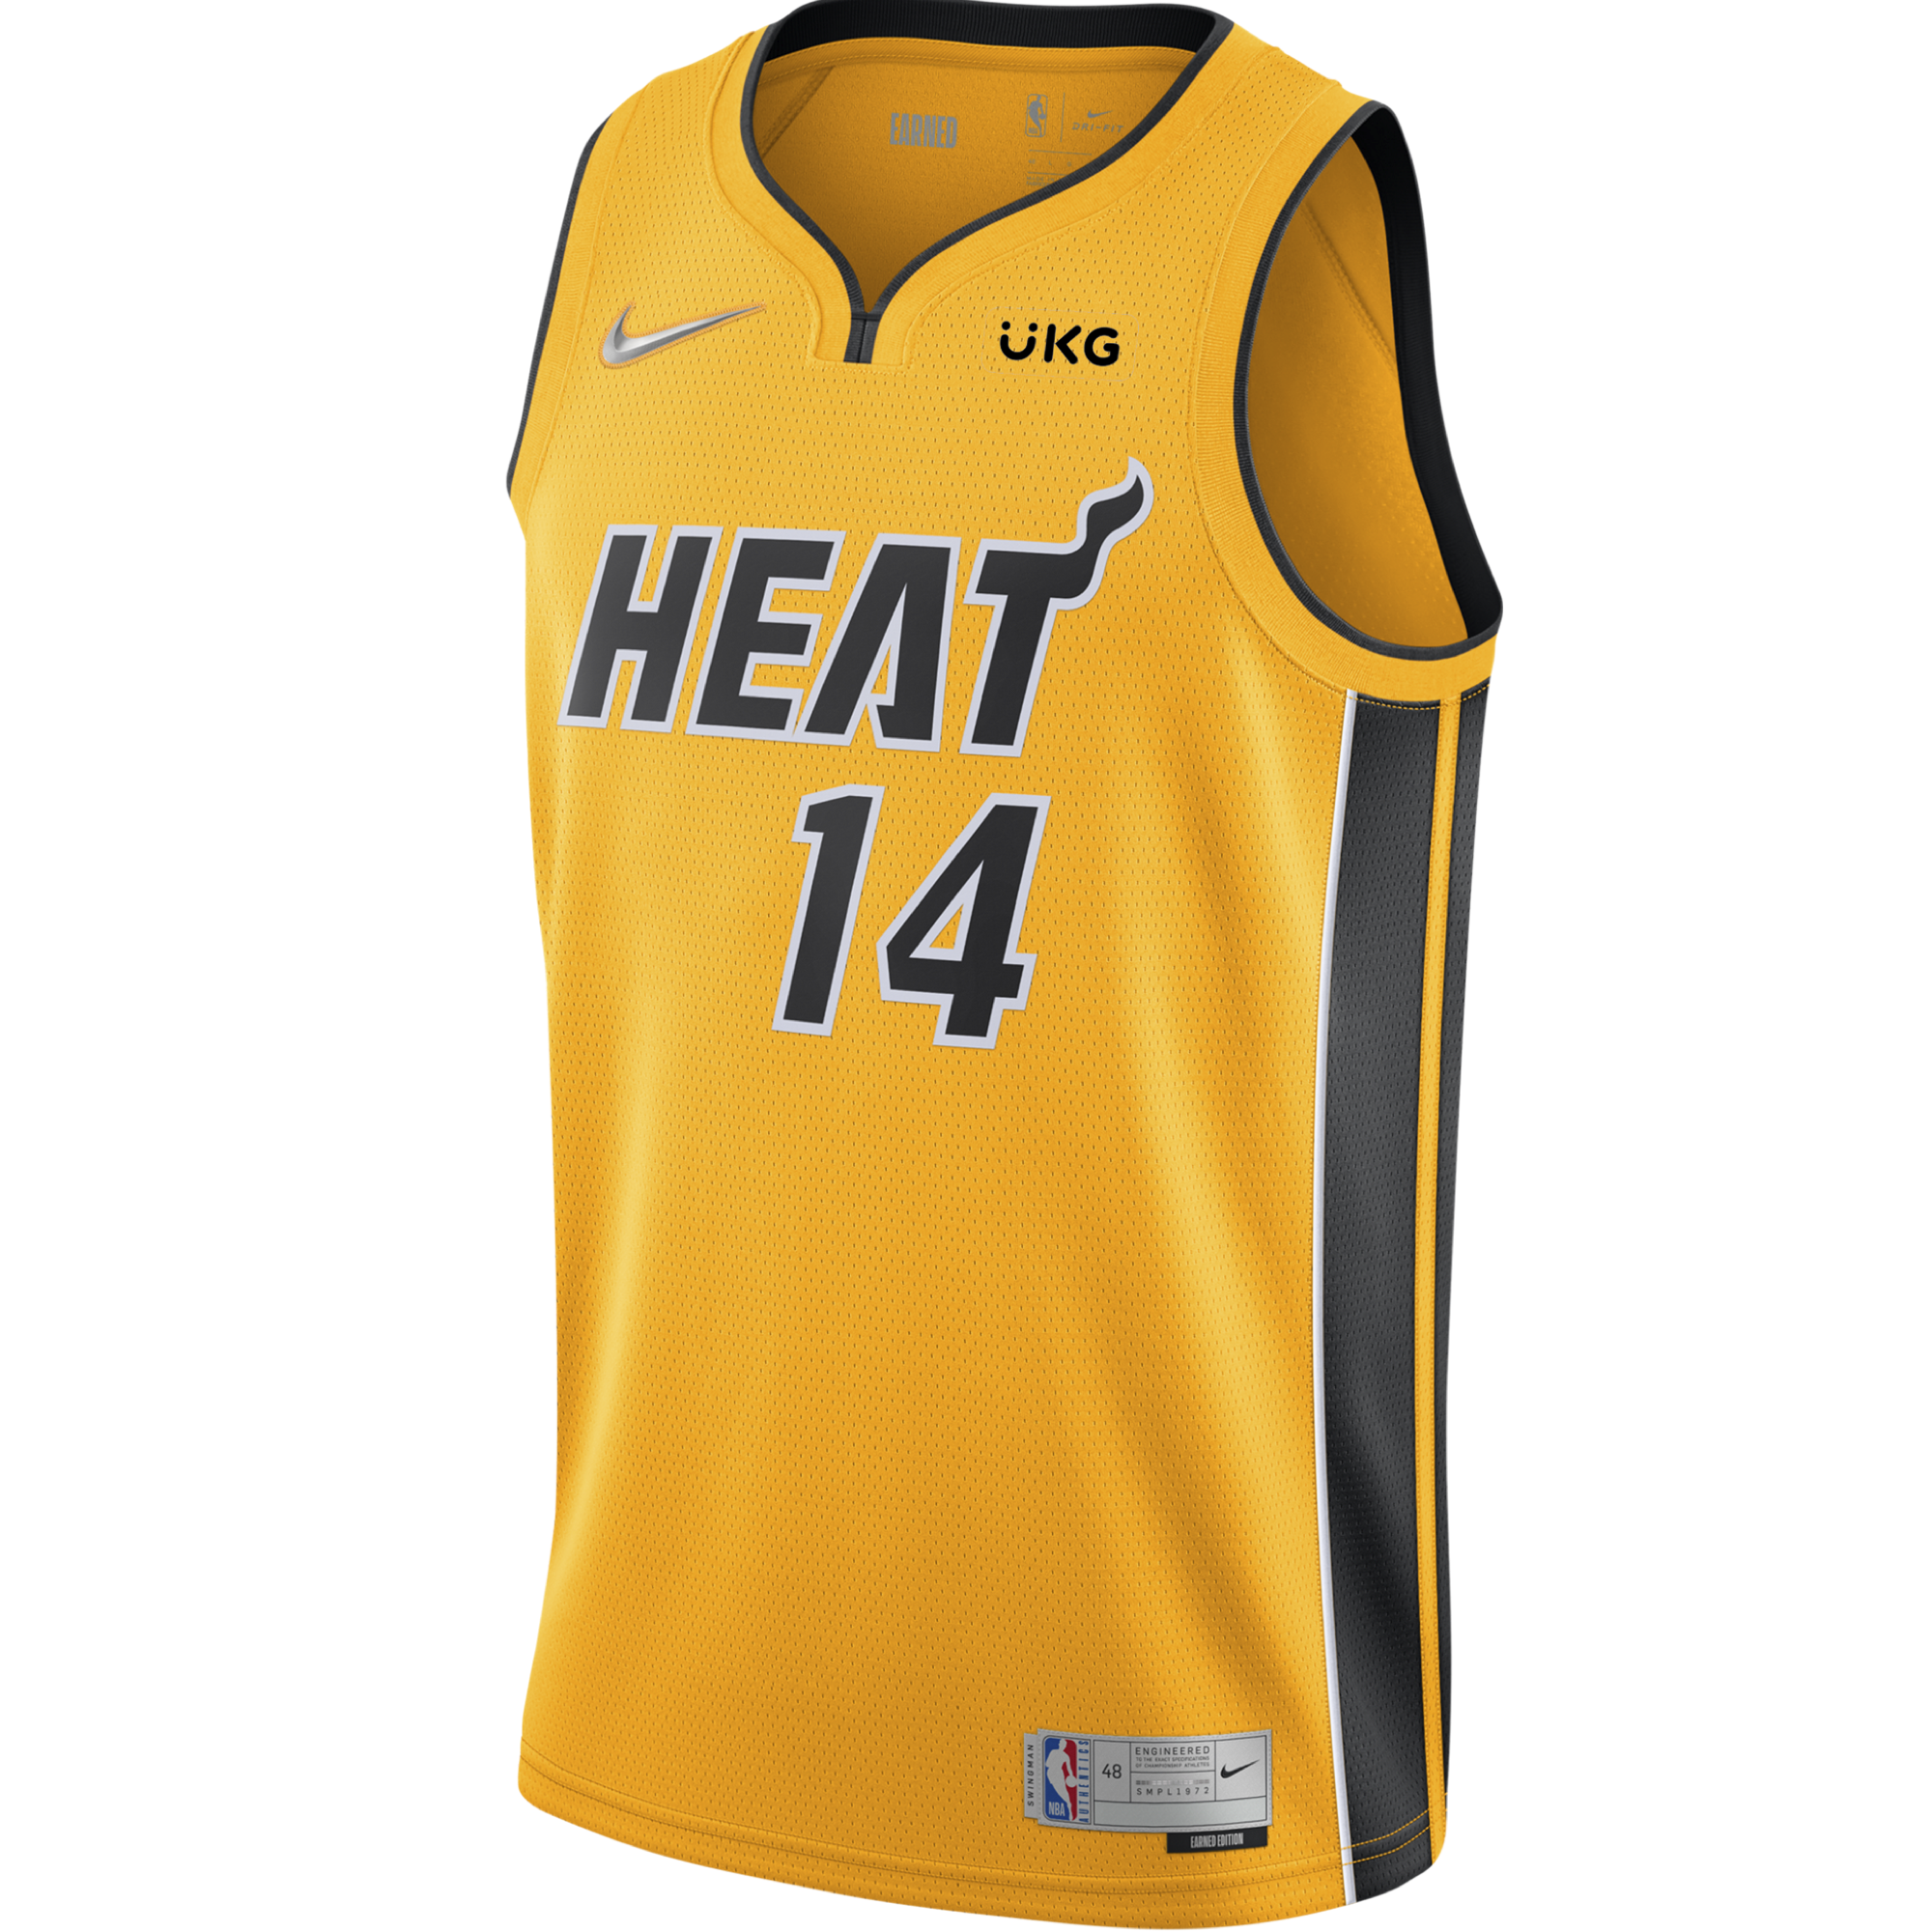 Nike, Shirts & Tops, Youth Tyler Herro Miami Heat Jersey Earned Gold  Swingman Jersey Size L 416